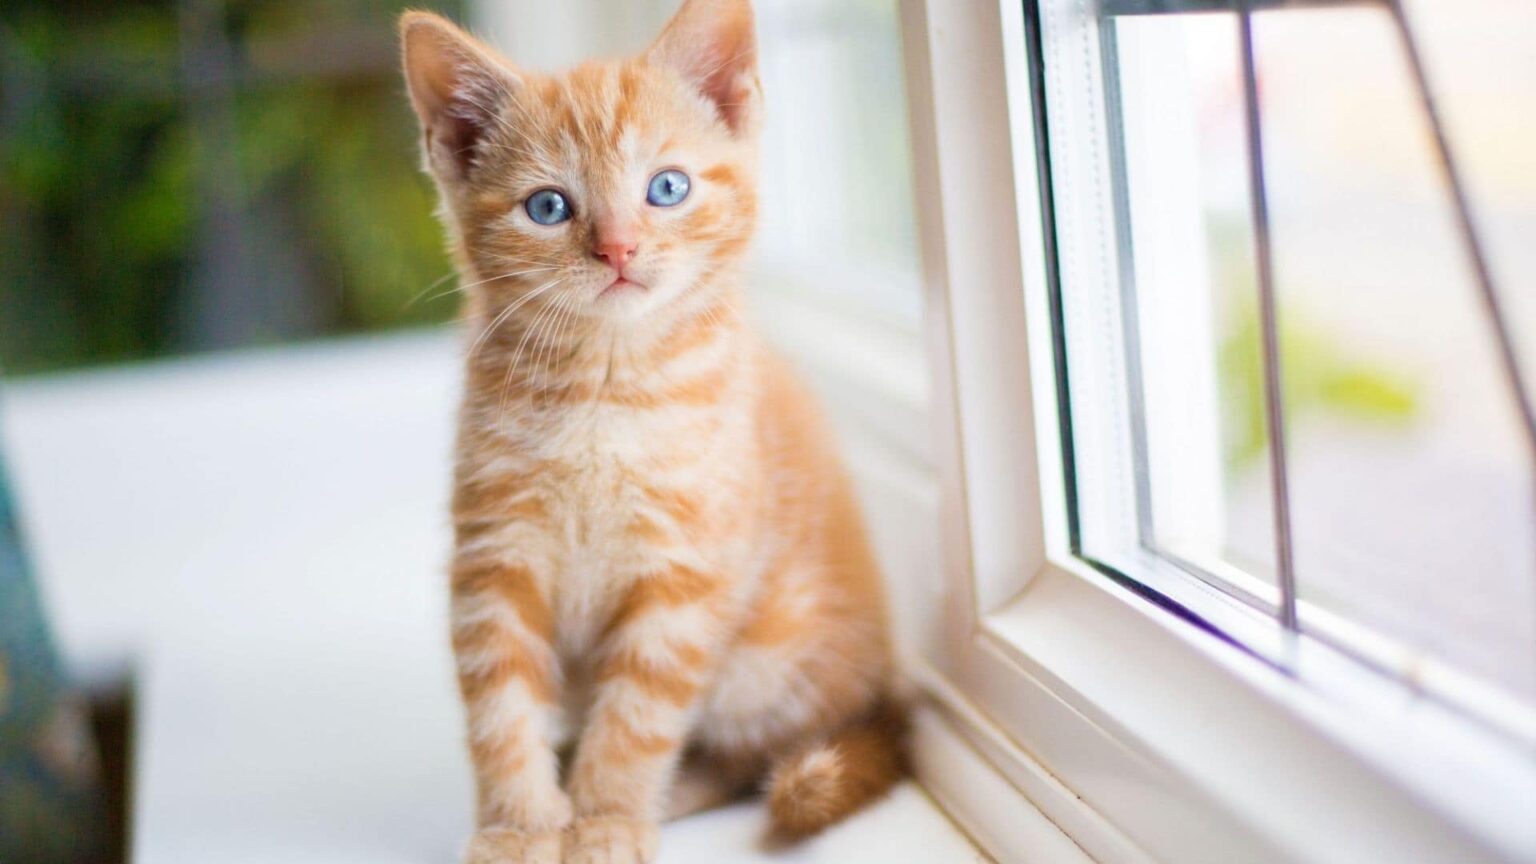 Dişi Kedi İsimleri Arasından En Sevilenleri Açıklıyoruz Kediniz İsmini